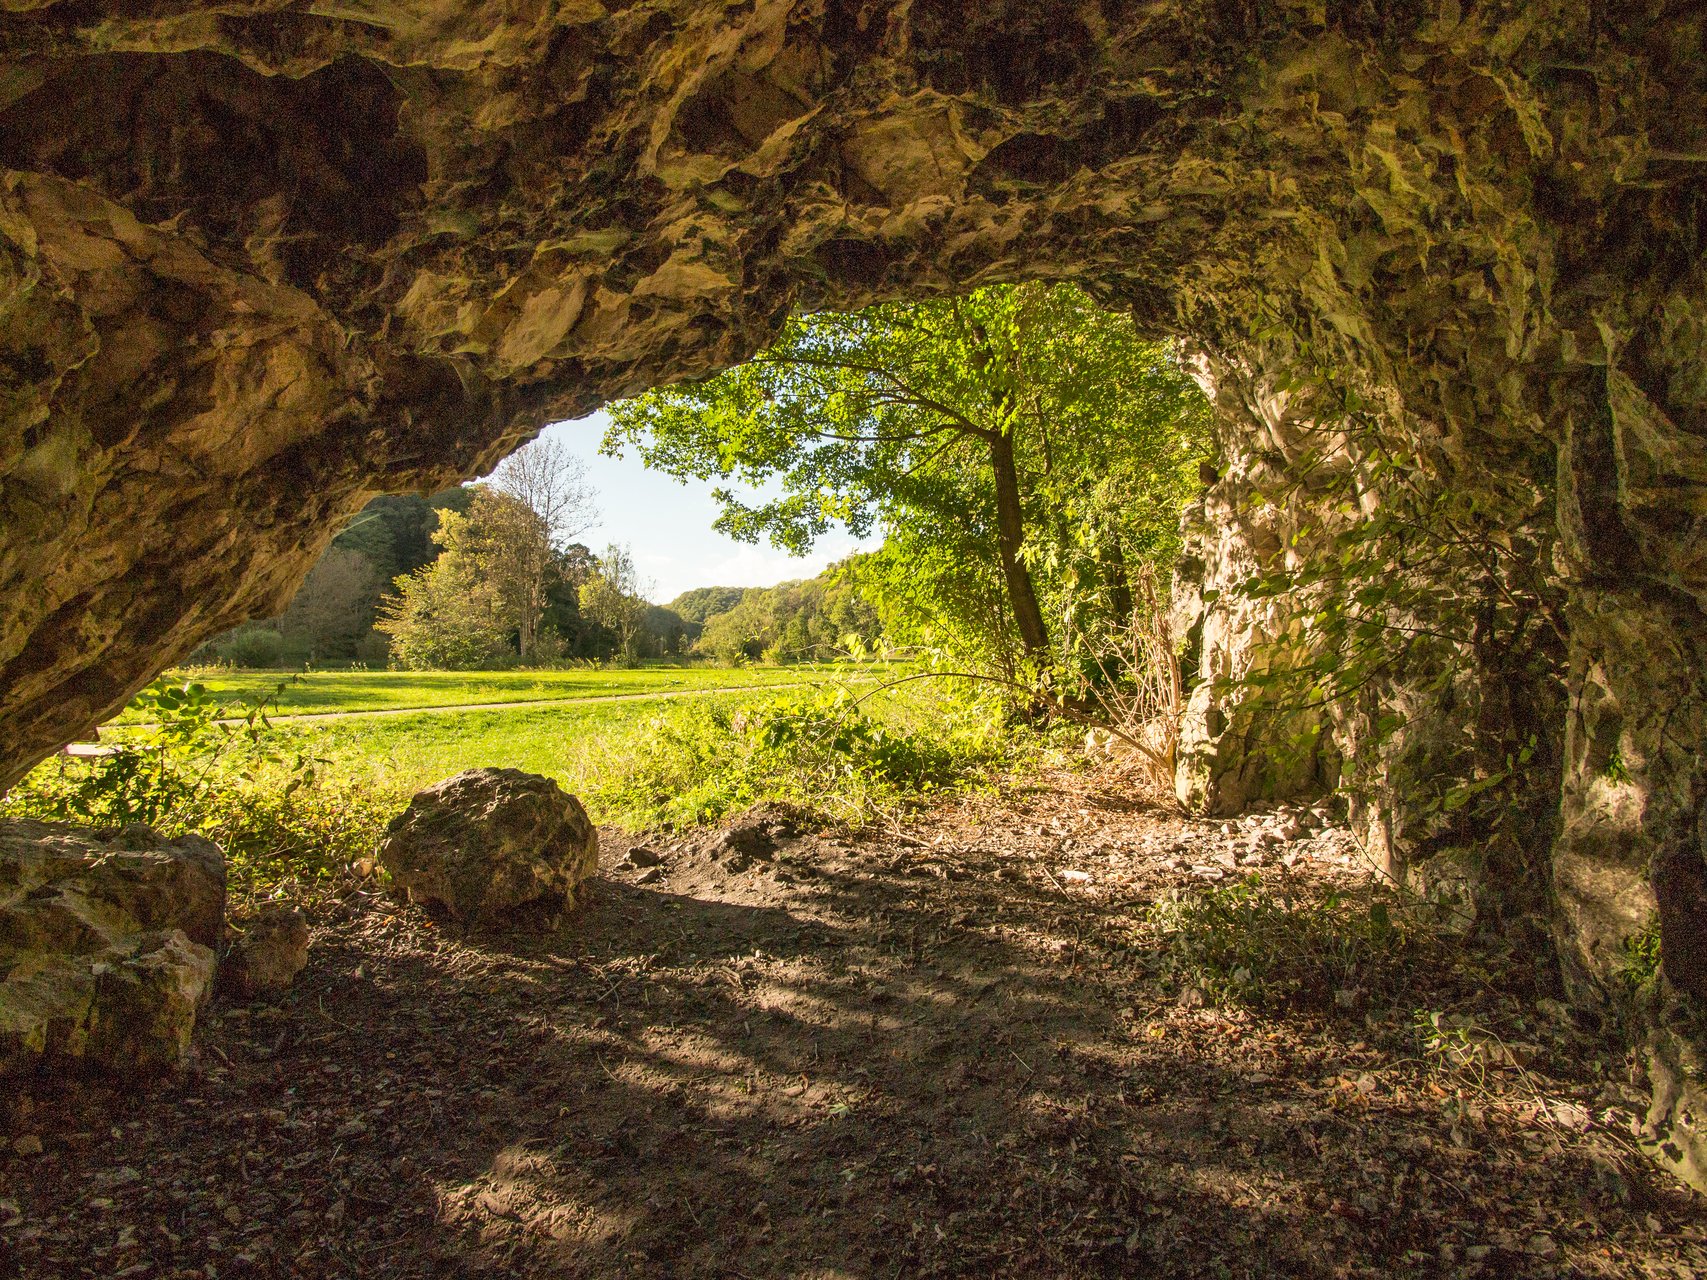 Geführte Themenführung "Wir erforschen eine Höhle" im Großen Lautertal im Biosphärengebiet Schwäbnische Alb. Ein kelienr Höhleneingang. Draußen ist es sonnig und die Wiesen und Bäume sind saftig grün.